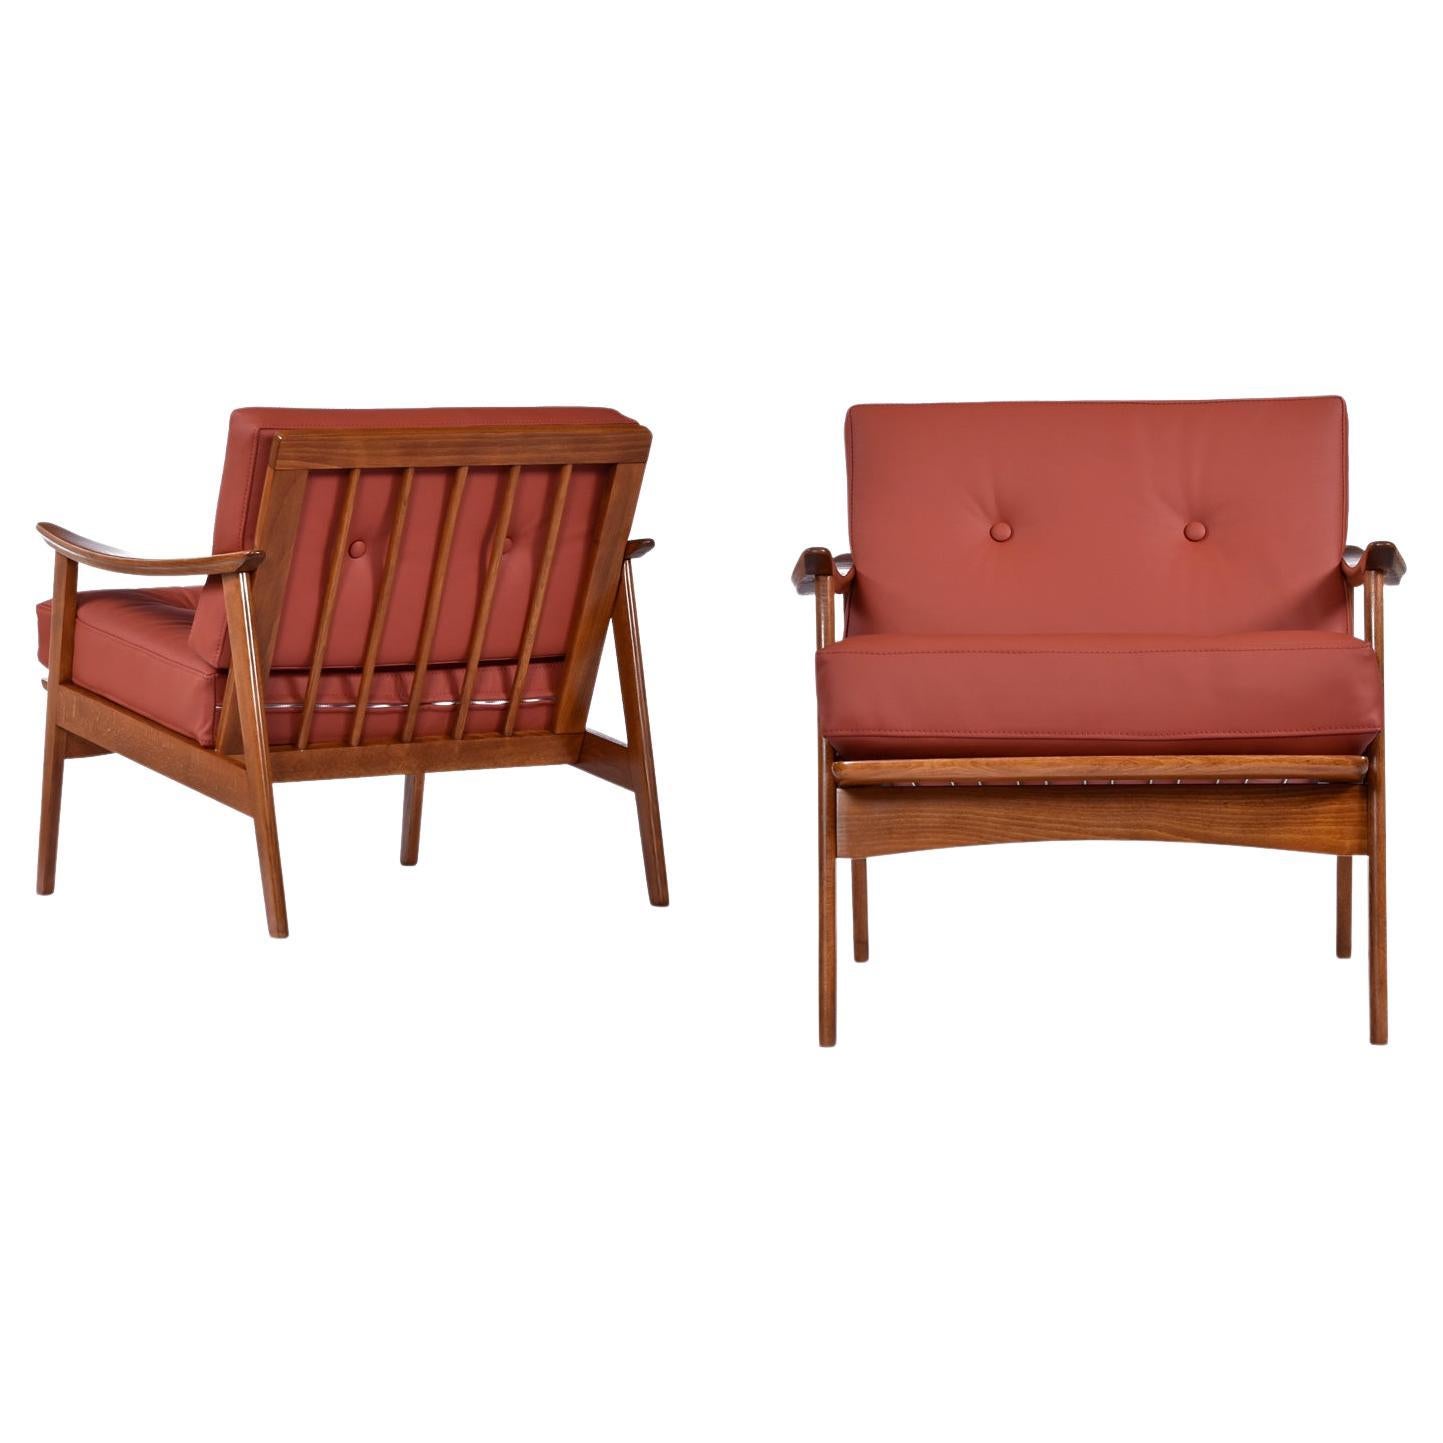 Belle paire de fauteuils en bois de hêtre massif de style moderne du milieu du siècle, fabriqués en Scandinavie. Ces fauteuils classiques et intemporels ont été rénovés et remis au goût du jour avec un tout nouveau revêtement en cuir de première